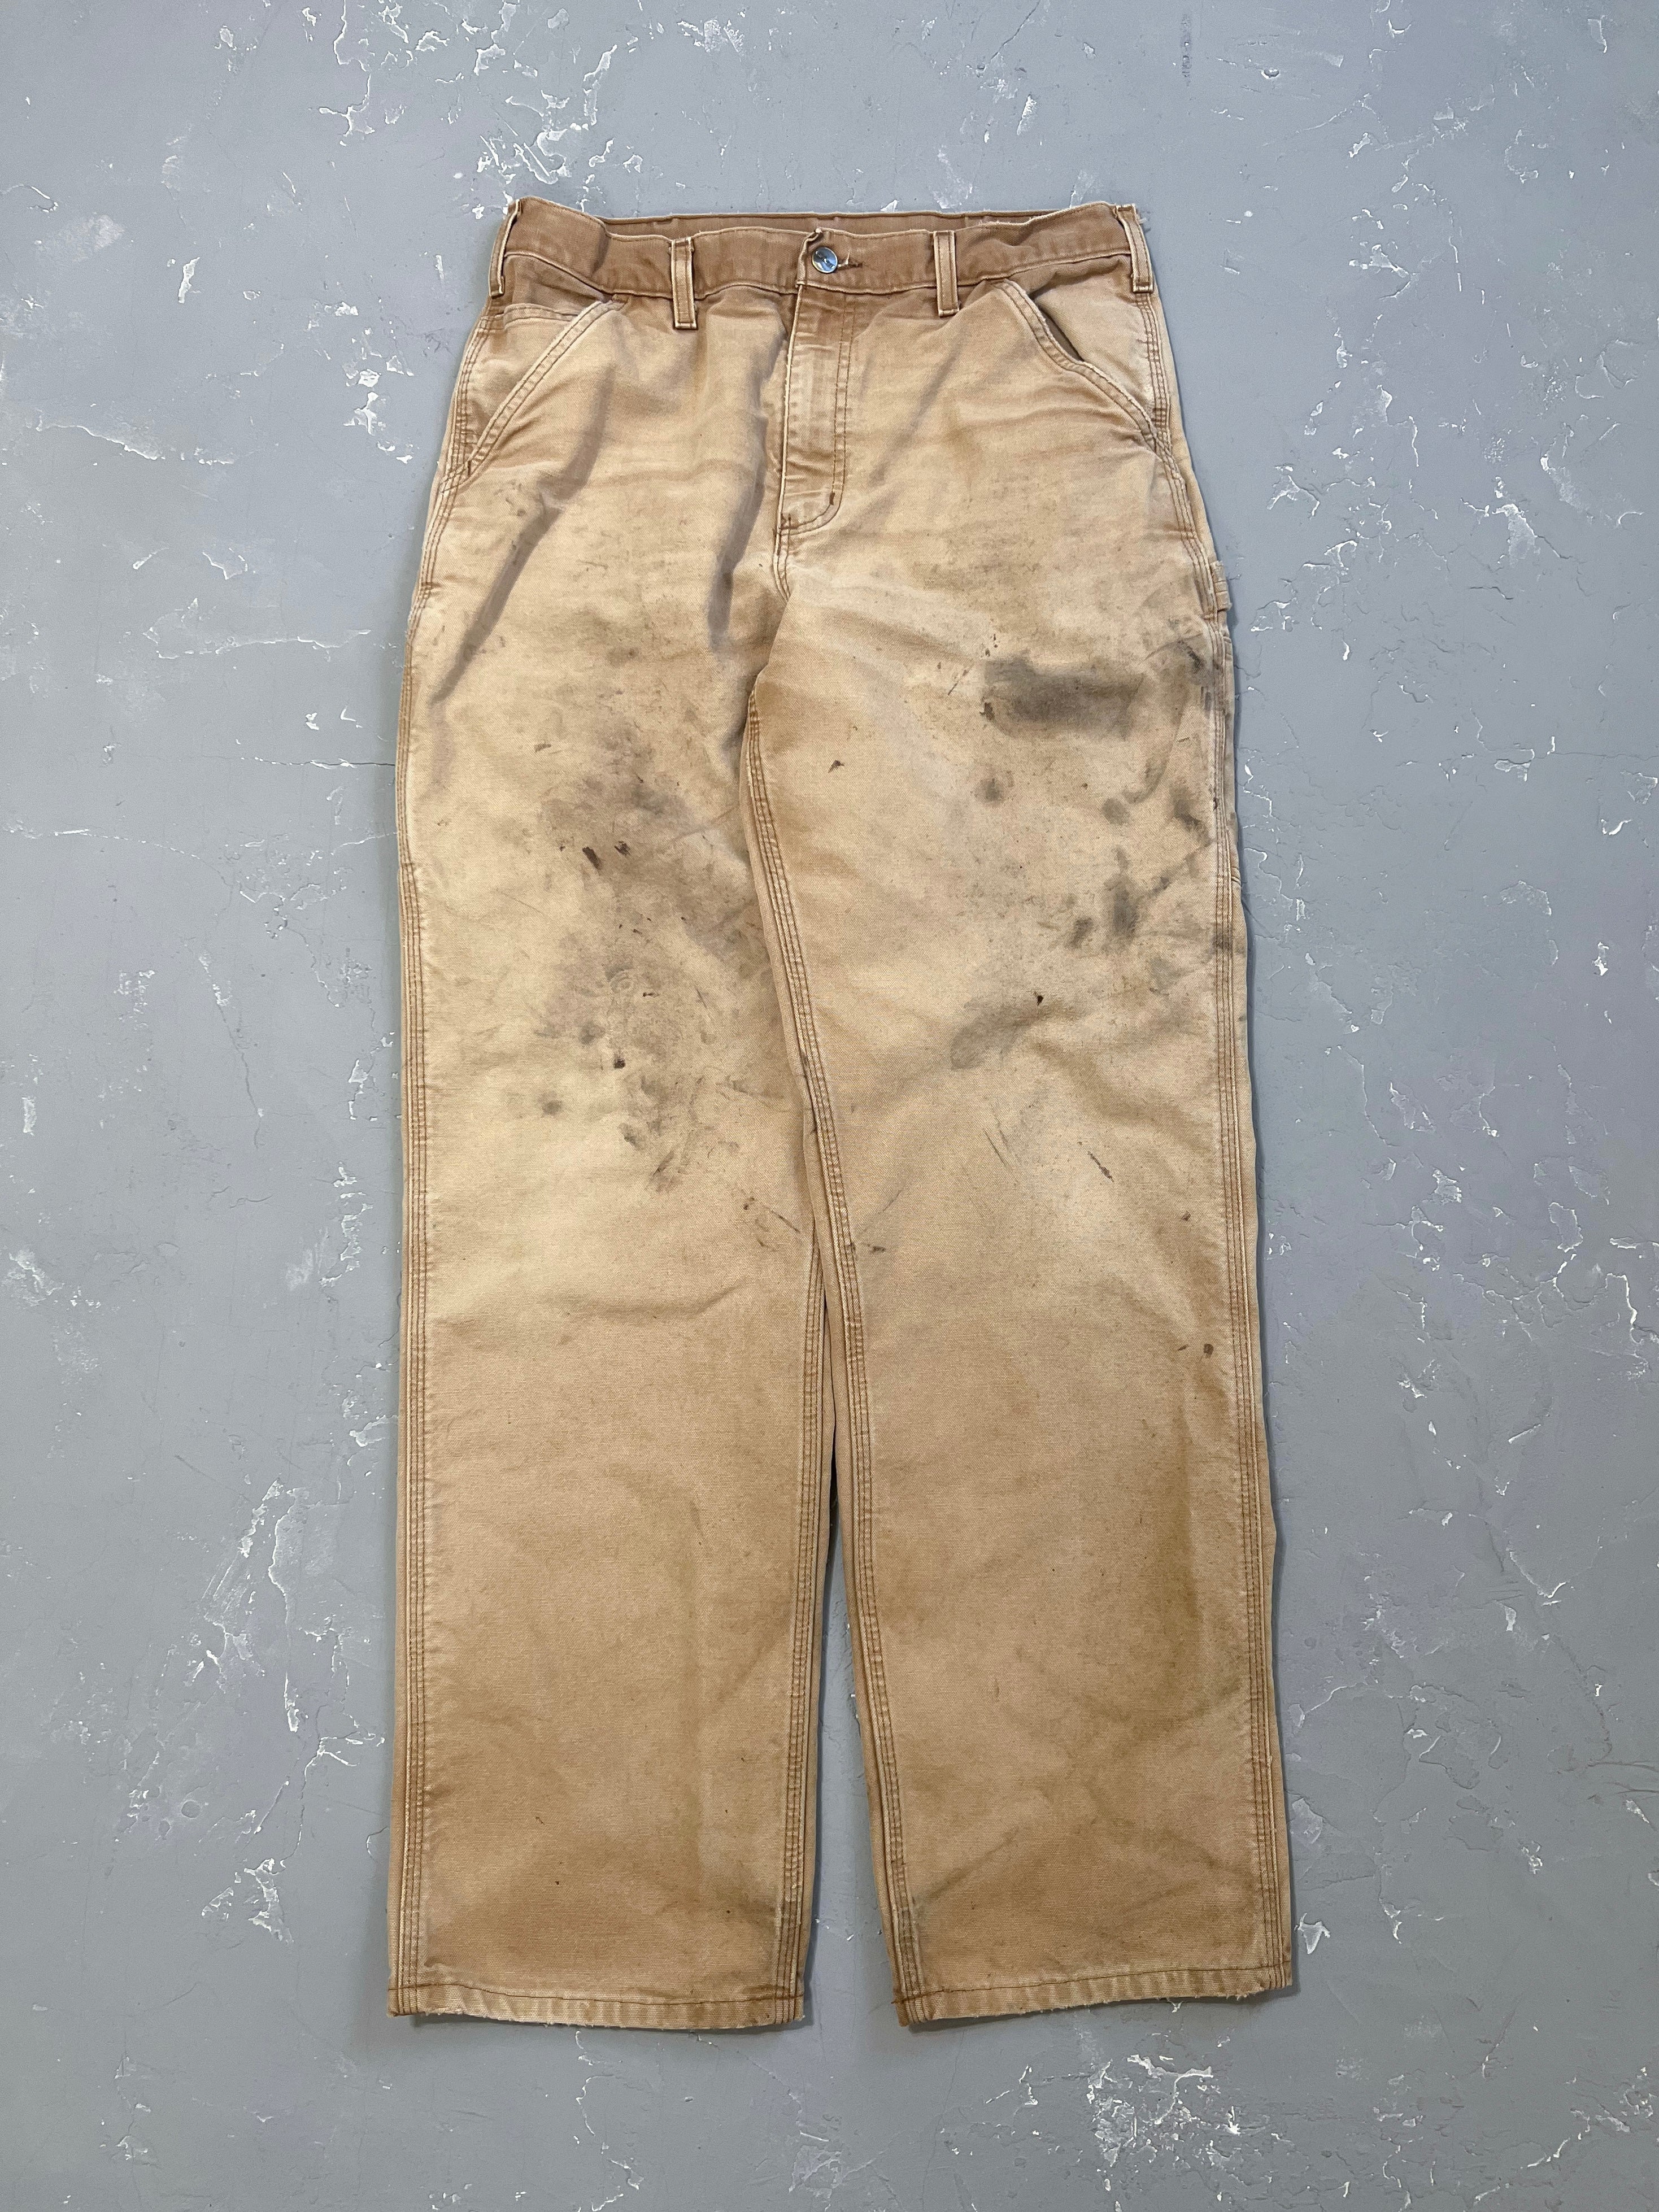 Carhartt Painted Sun Bleached Carpenter Pants [33 x 34]